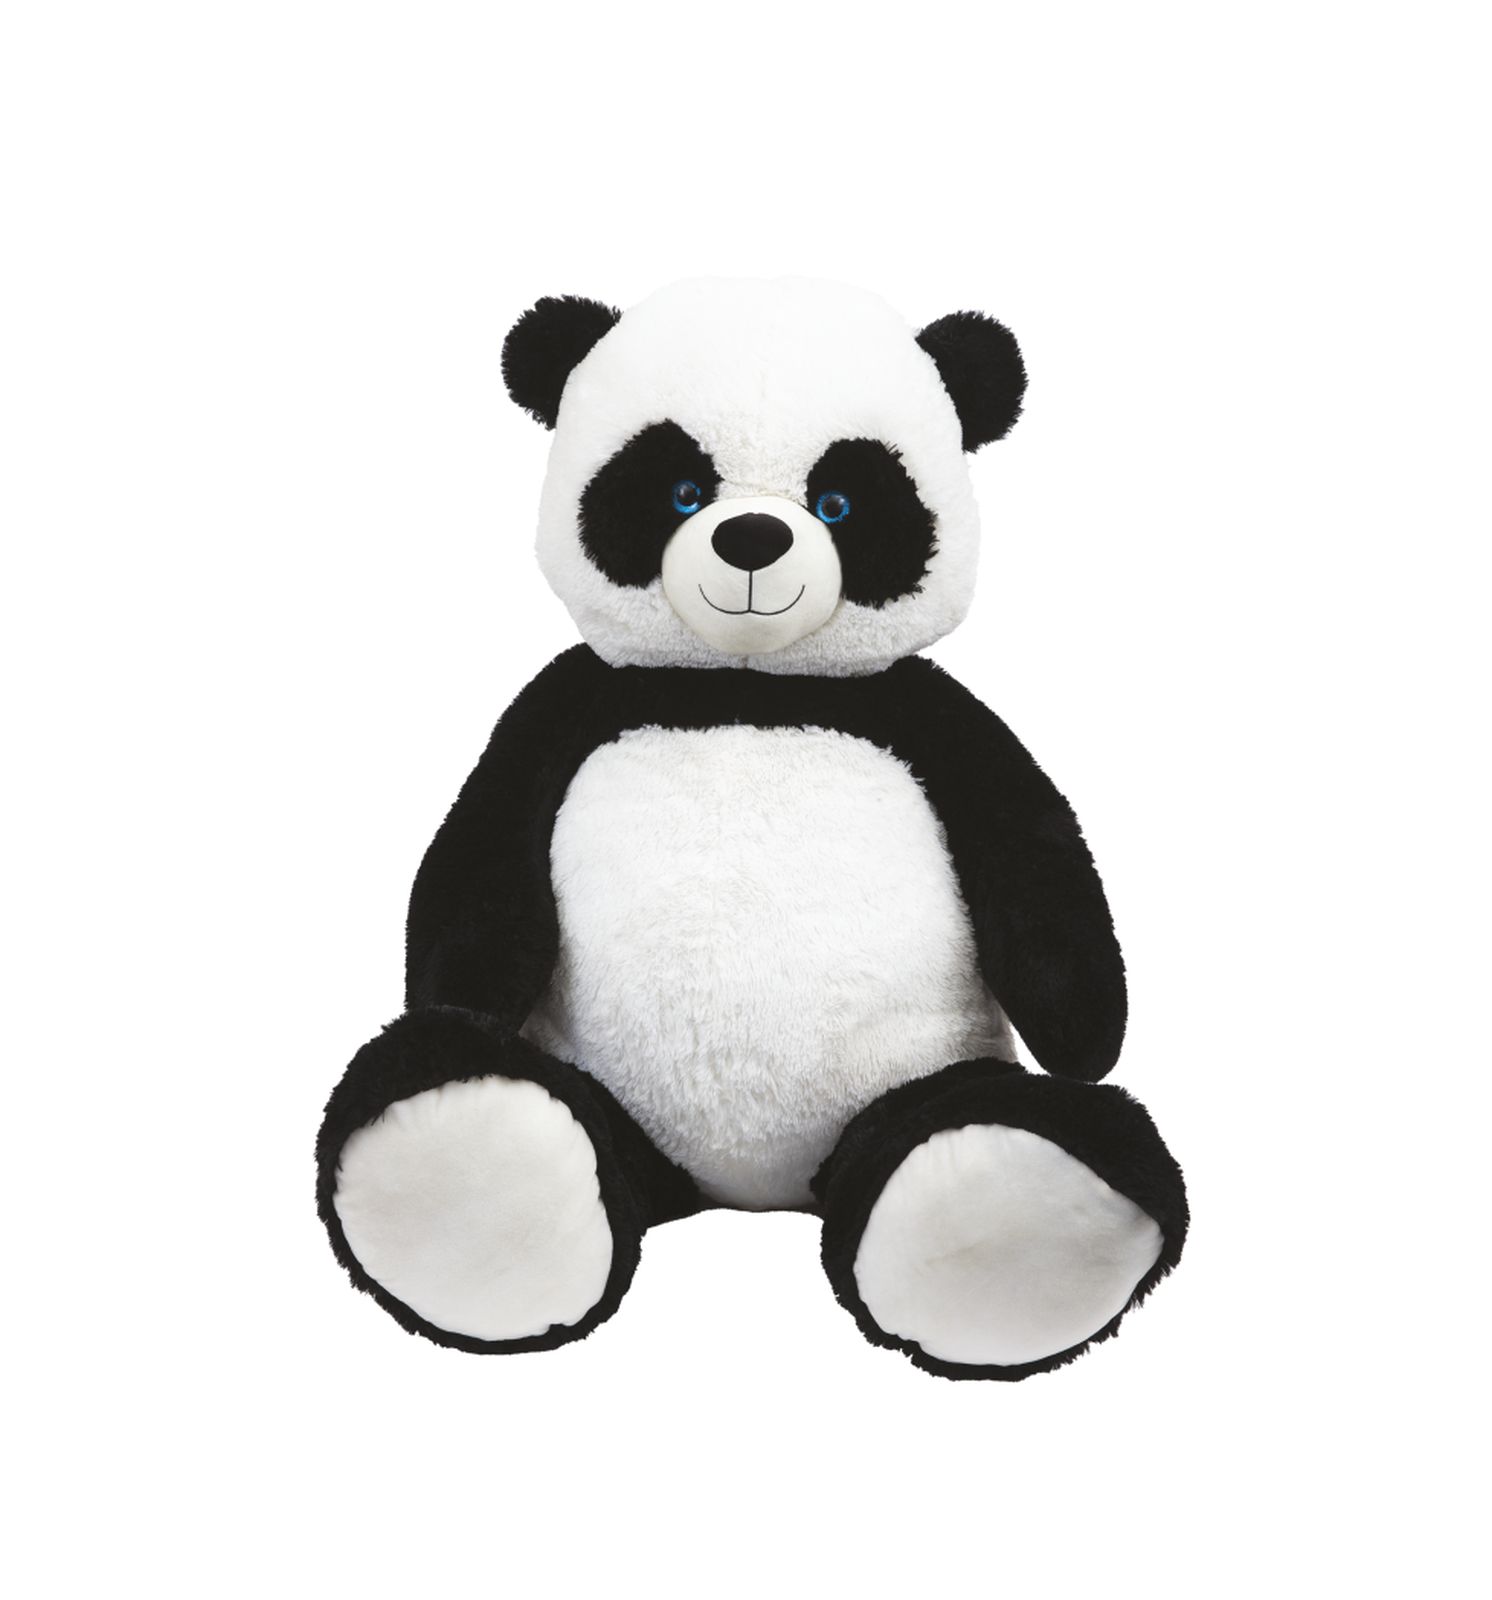 Panda gigante - AMI PLUSH, SUPERSTAR